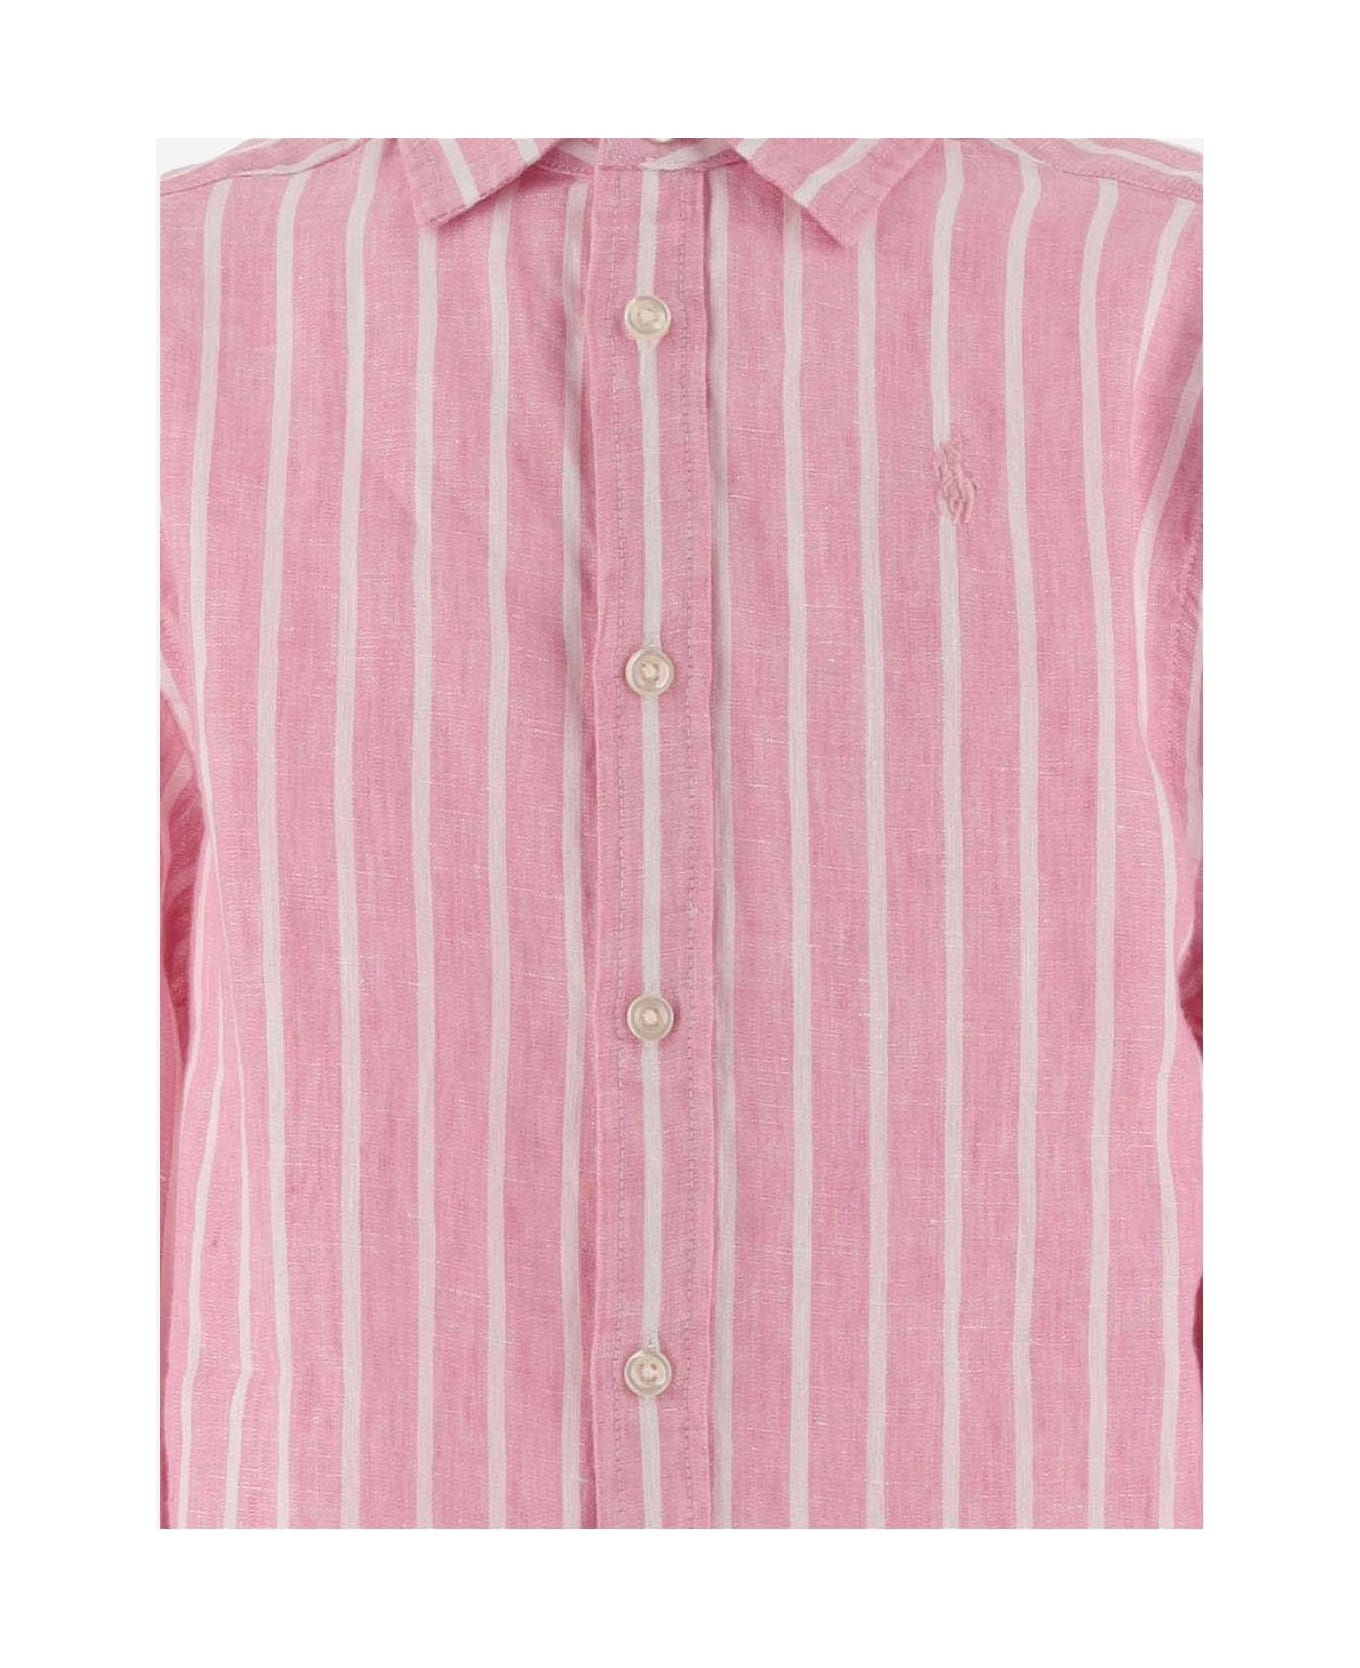 Polo Ralph Lauren Linen Striped Shirt With Logo - Pink